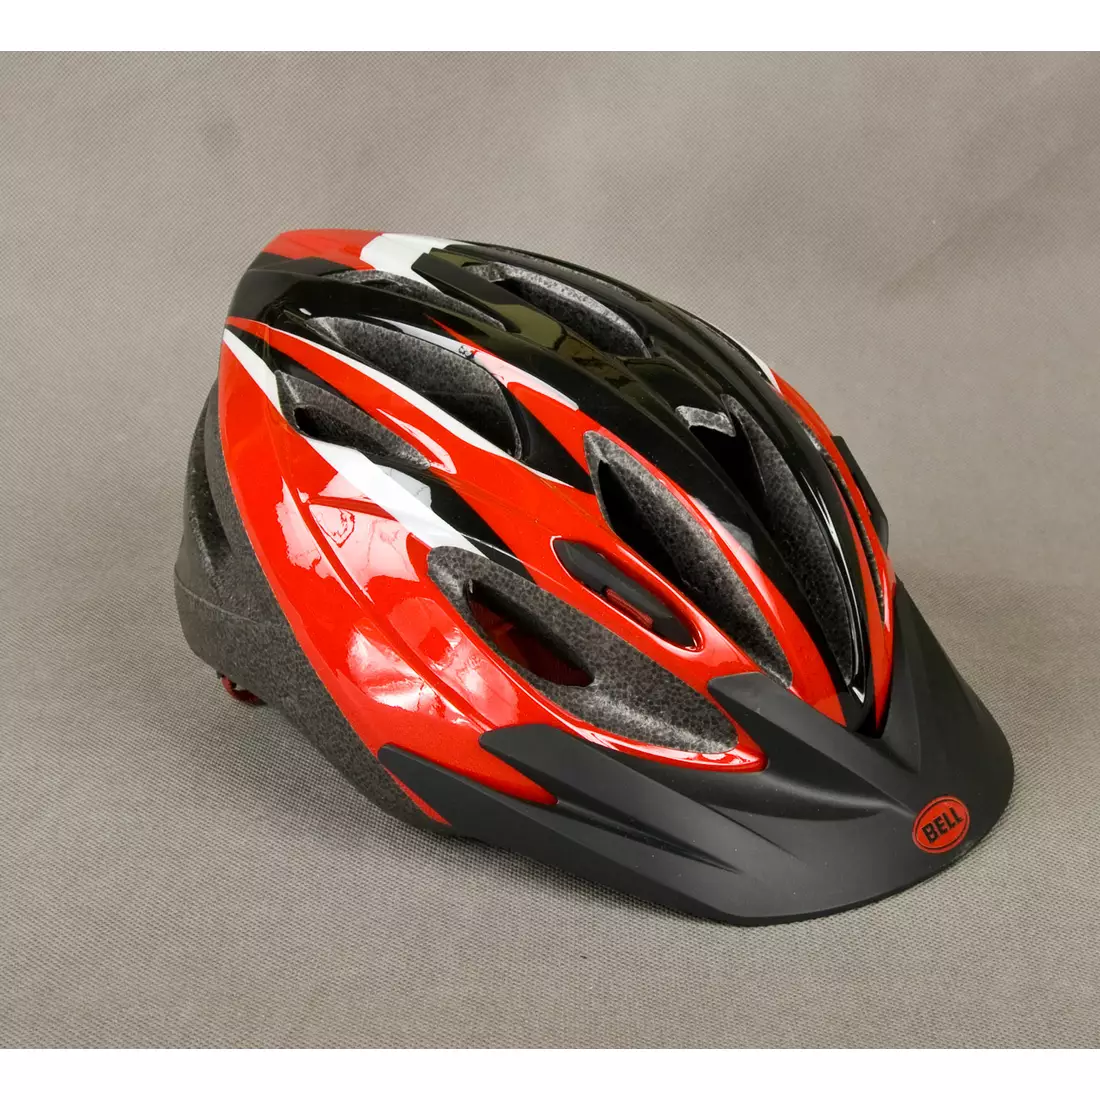 BELL PRESIDIO - kerékpáros sisak, színe: piros és fekete